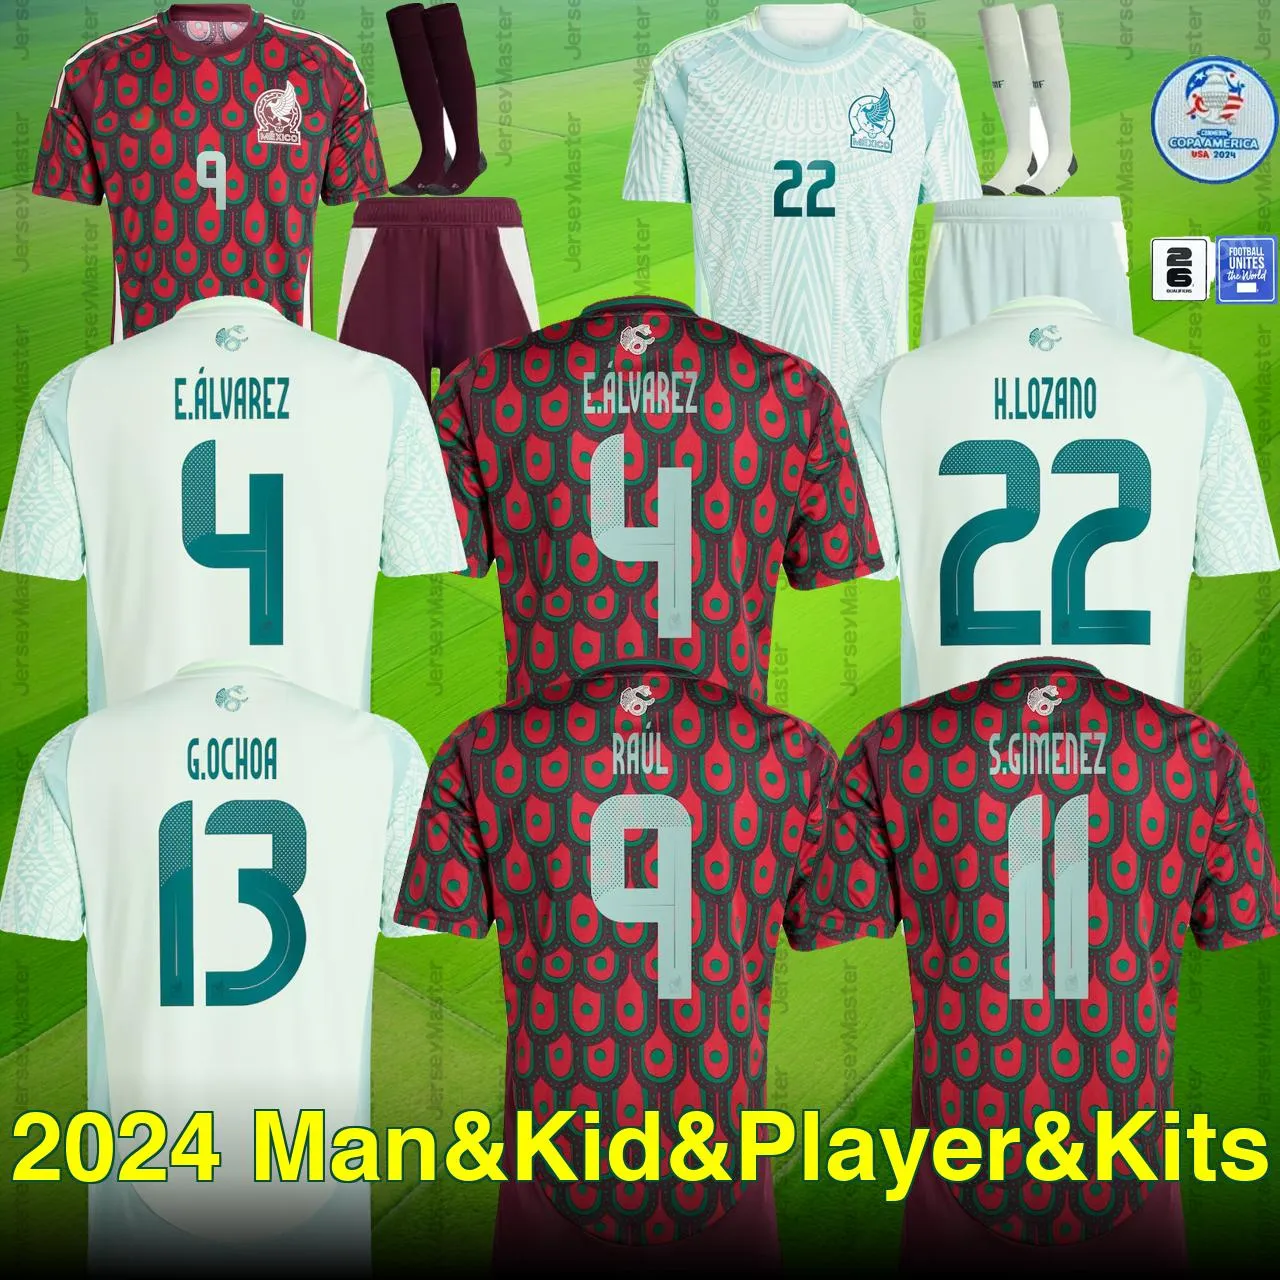 Messico 2024 Copa America 2026 Qualificazioni Raul Chicharito Maglie da calcio Lozano dos Santos 24 25 H.Lozano uomini Kids Calcio Shirts Uniforms Fan Fan Player Versione